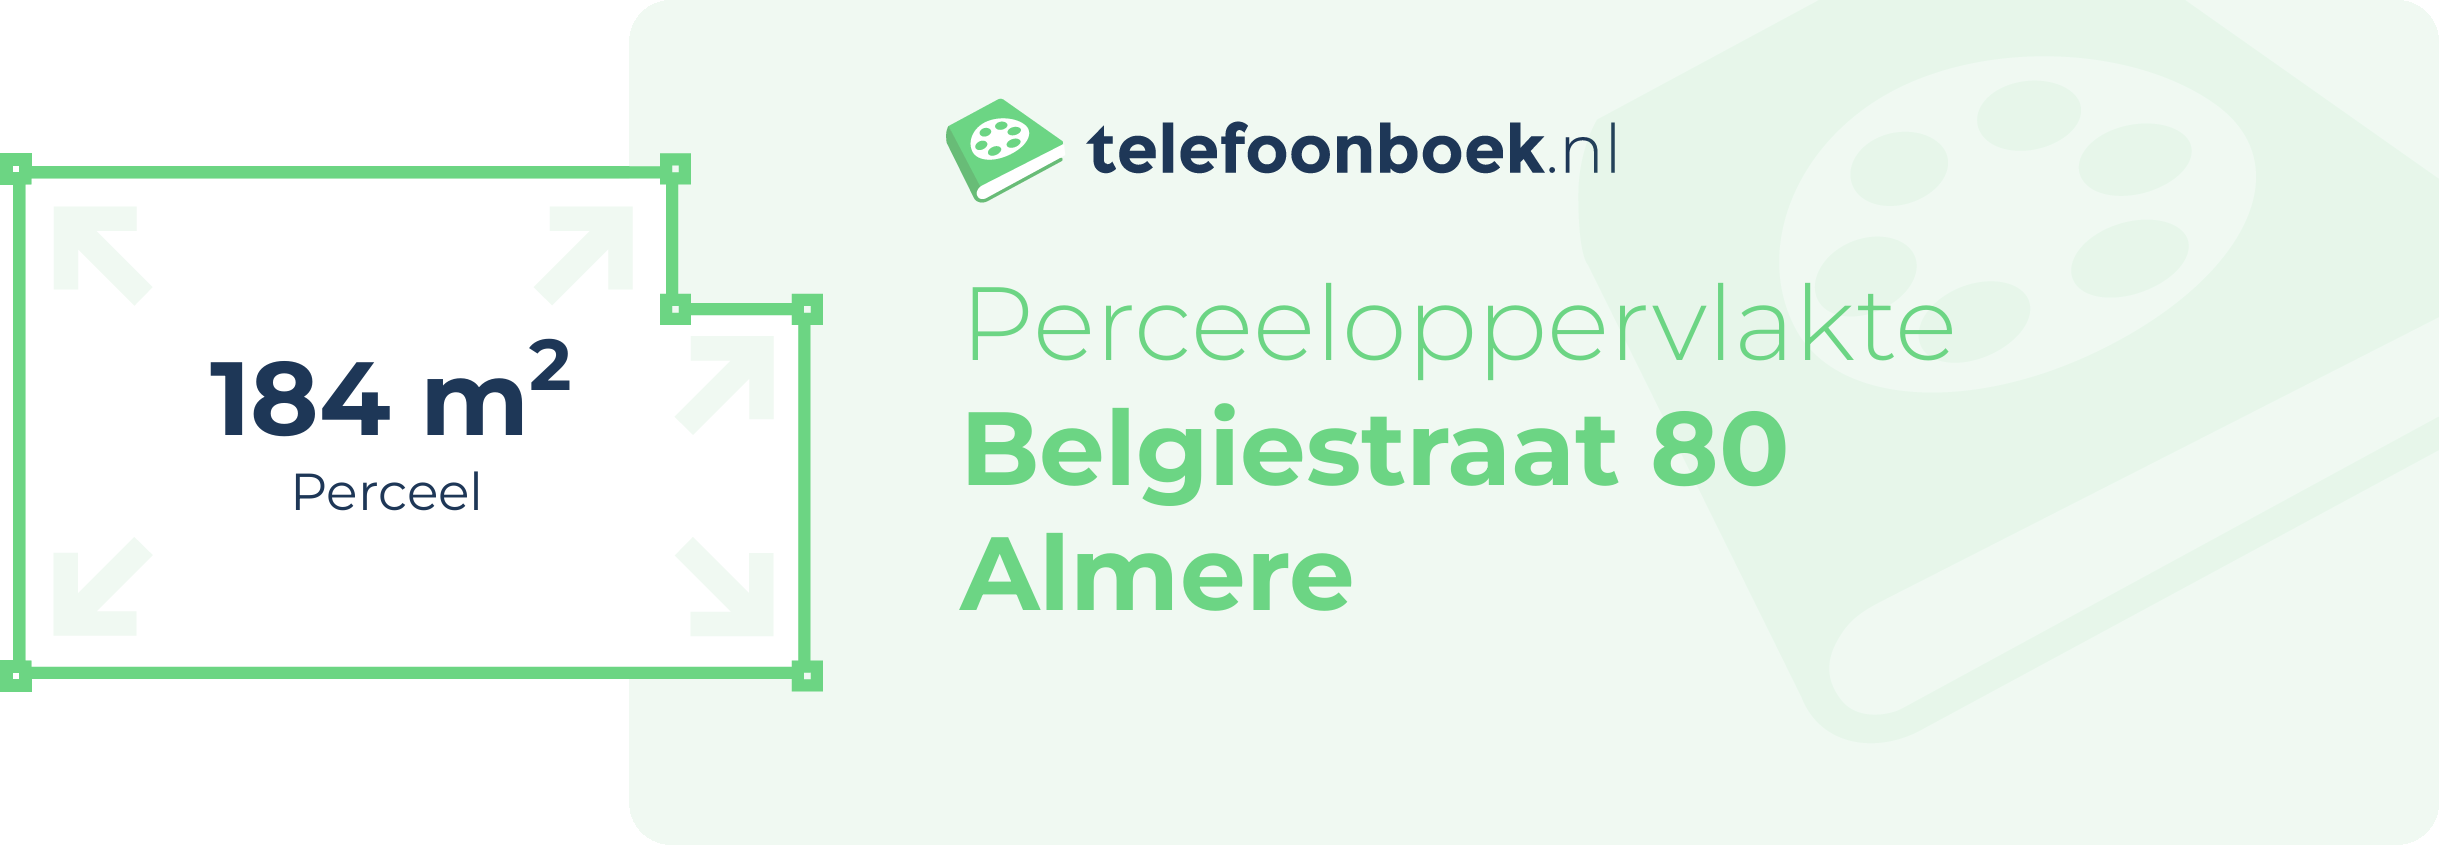 Perceeloppervlakte Belgiestraat 80 Almere